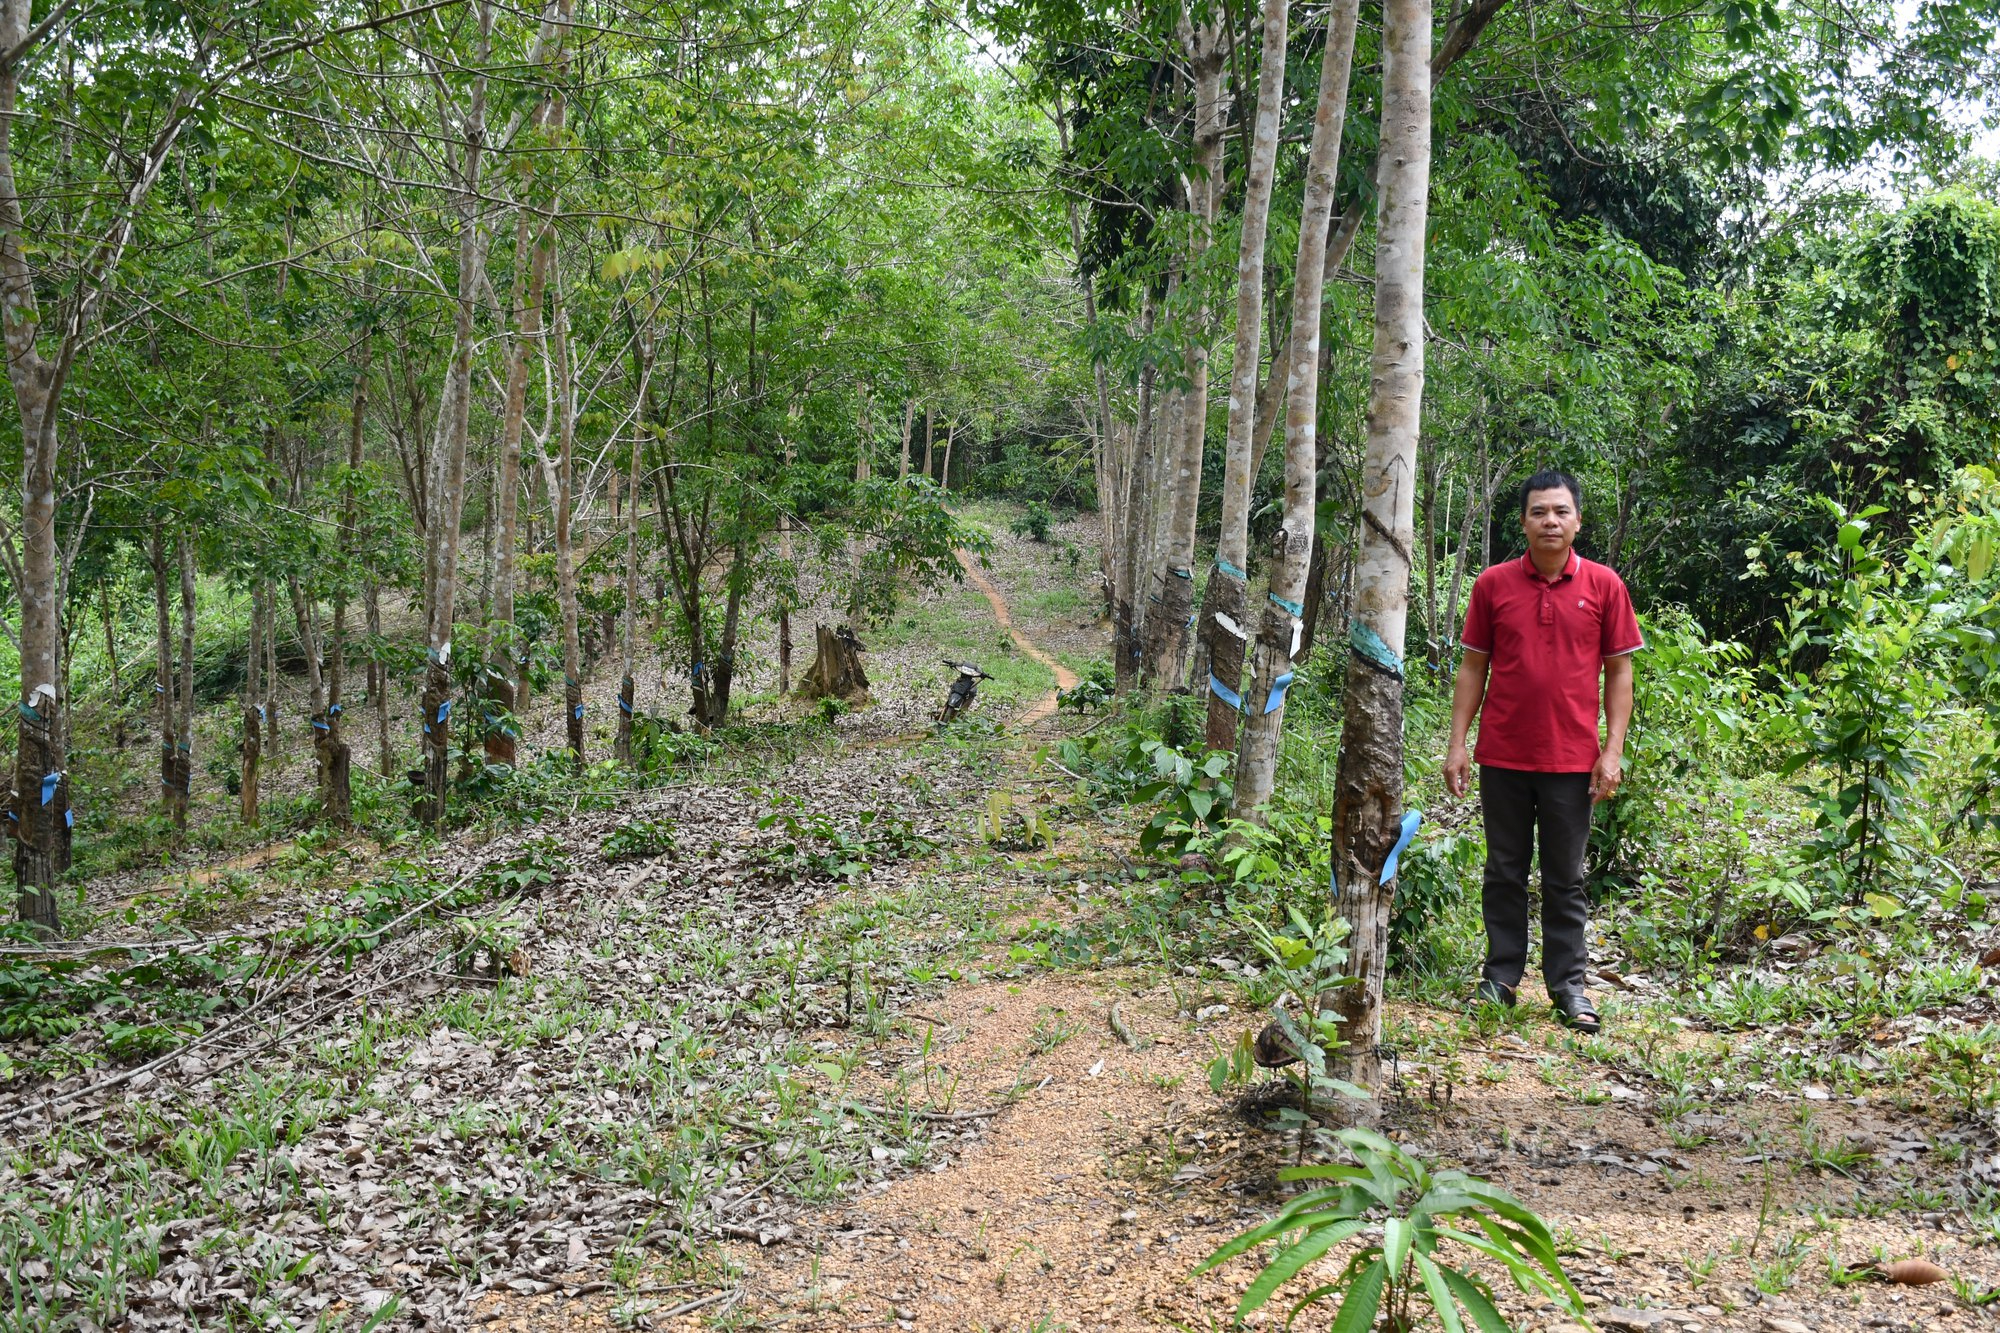 Vườn cao su bị chiếm đoạt 5 năm, kiện ra tòa, một nông dân tỉnh Bình Phước đã thắng kiện - Ảnh 1.